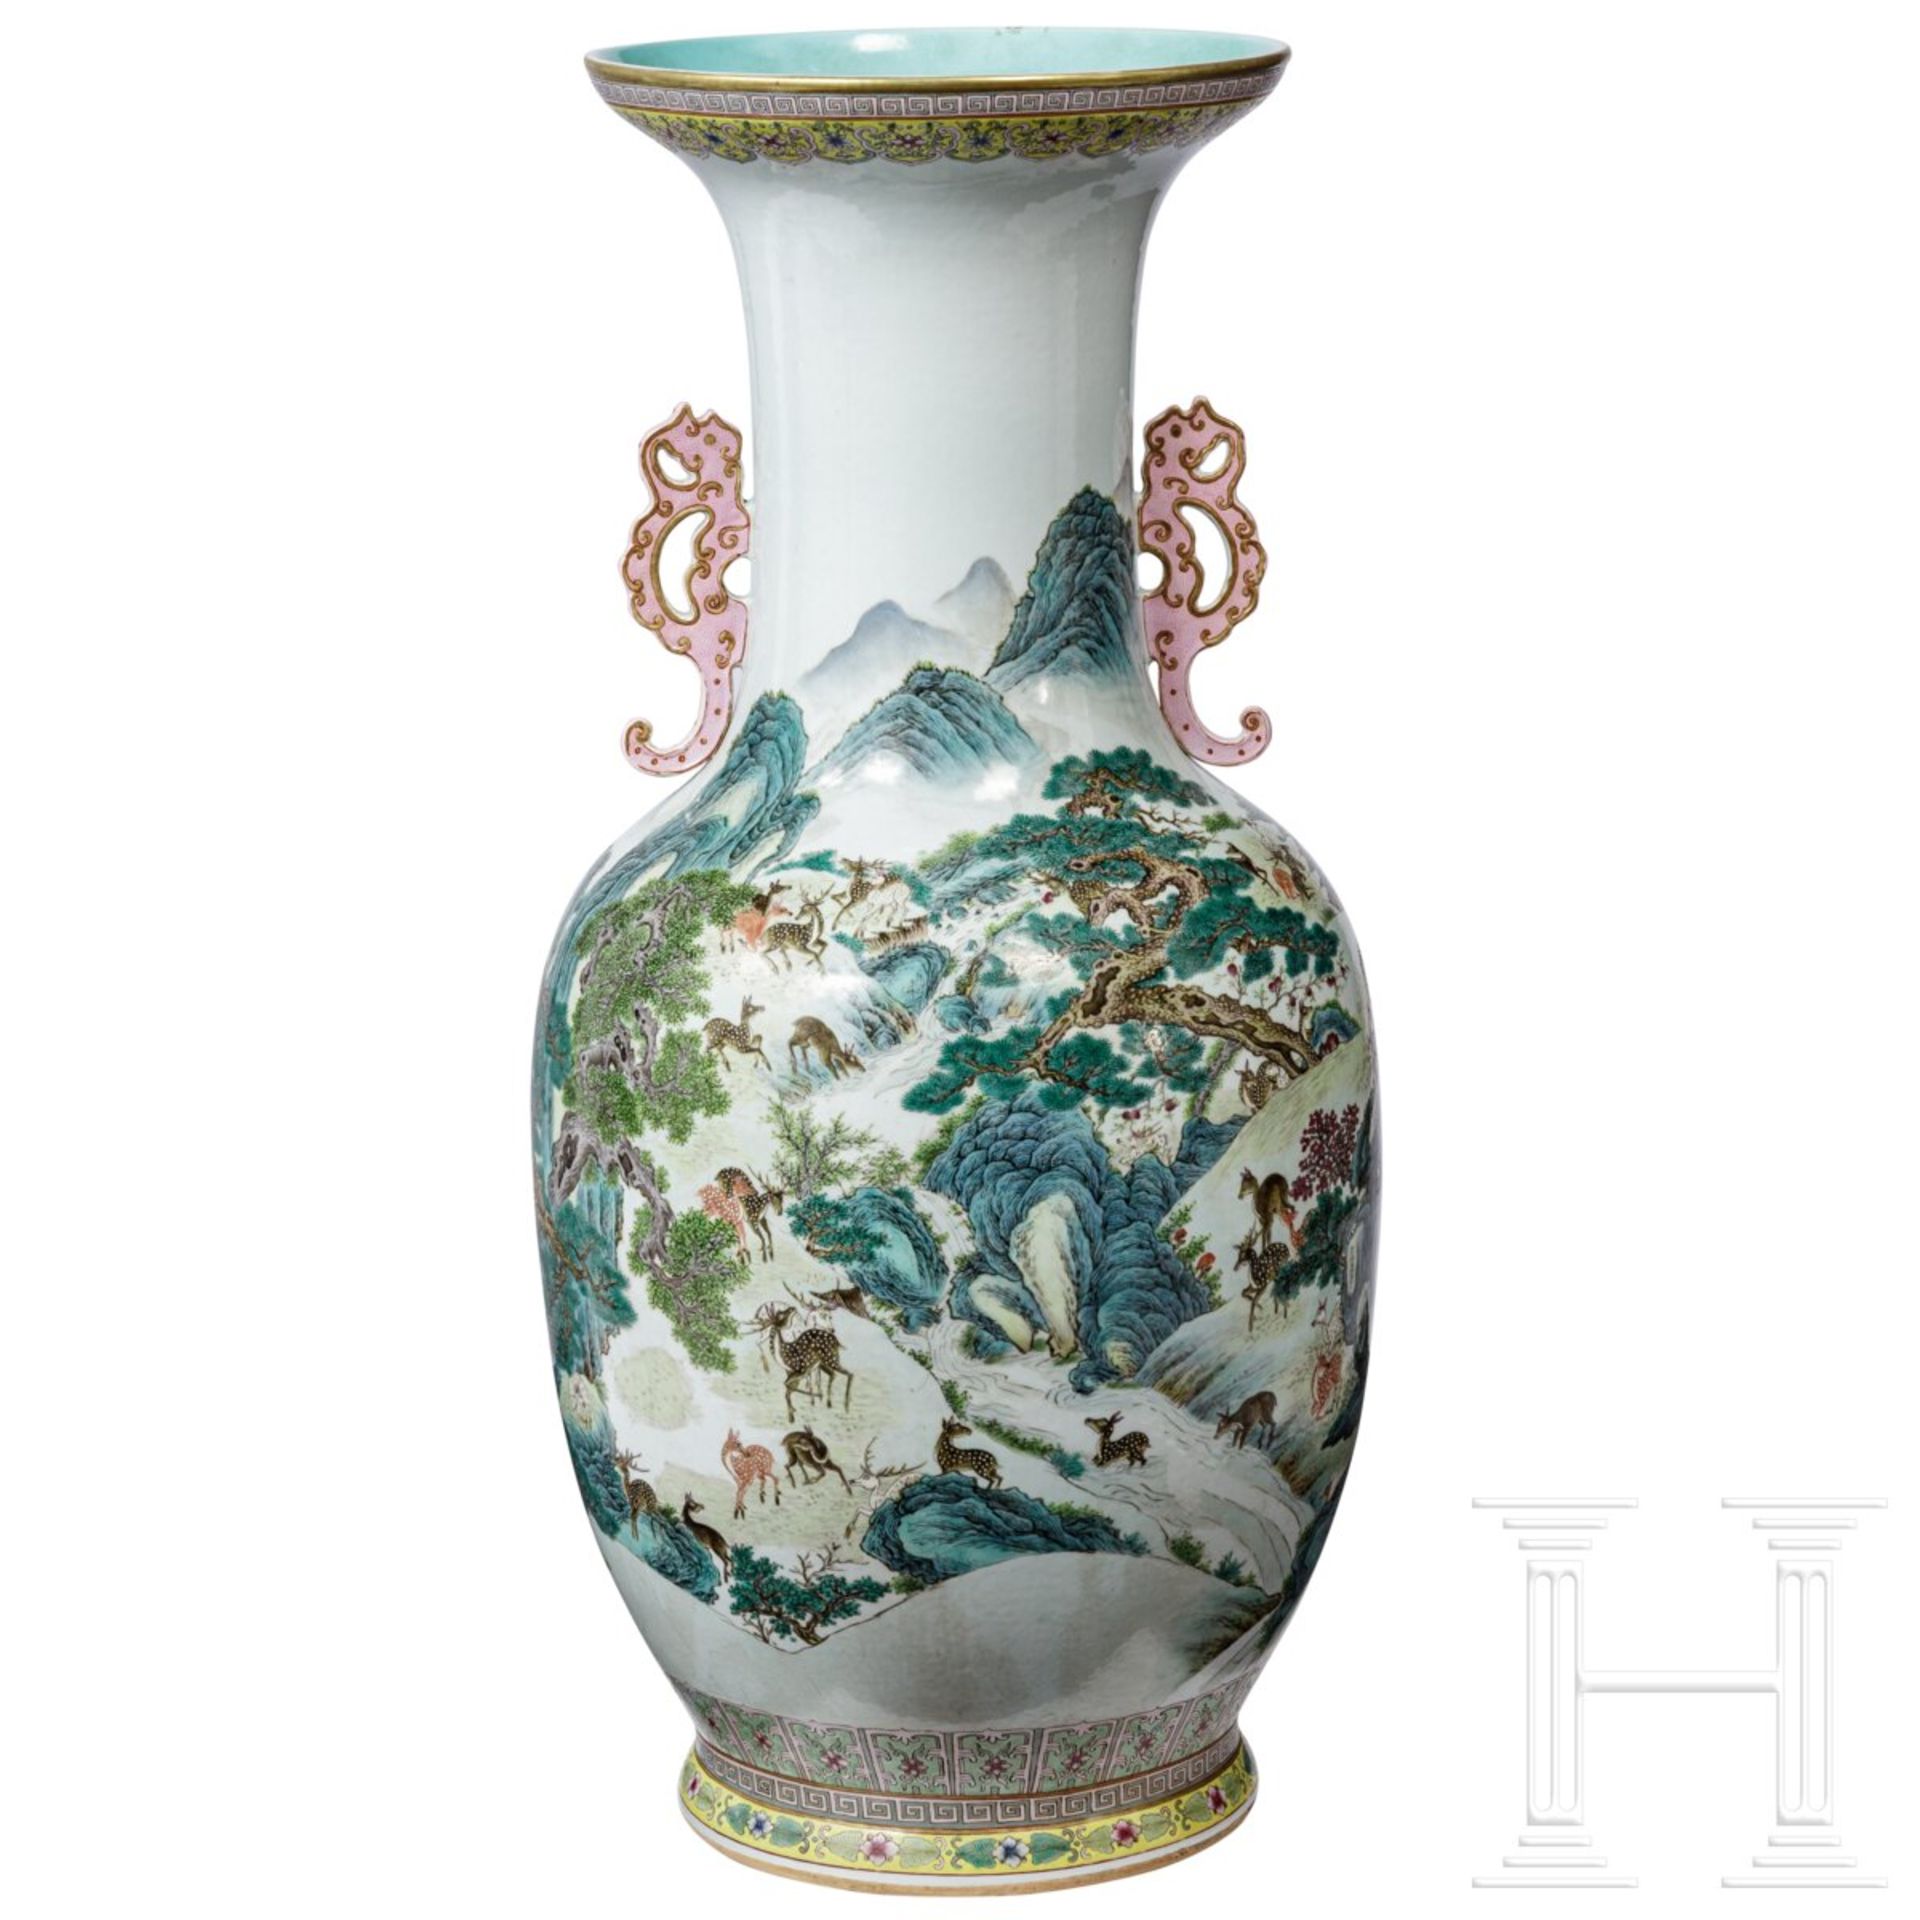 Monumentale Famille-rose-Vase mit "Hundert-Hirsche-Dekor", späte Qing-Dynastie oder frühe Republik,  - Bild 2 aus 24